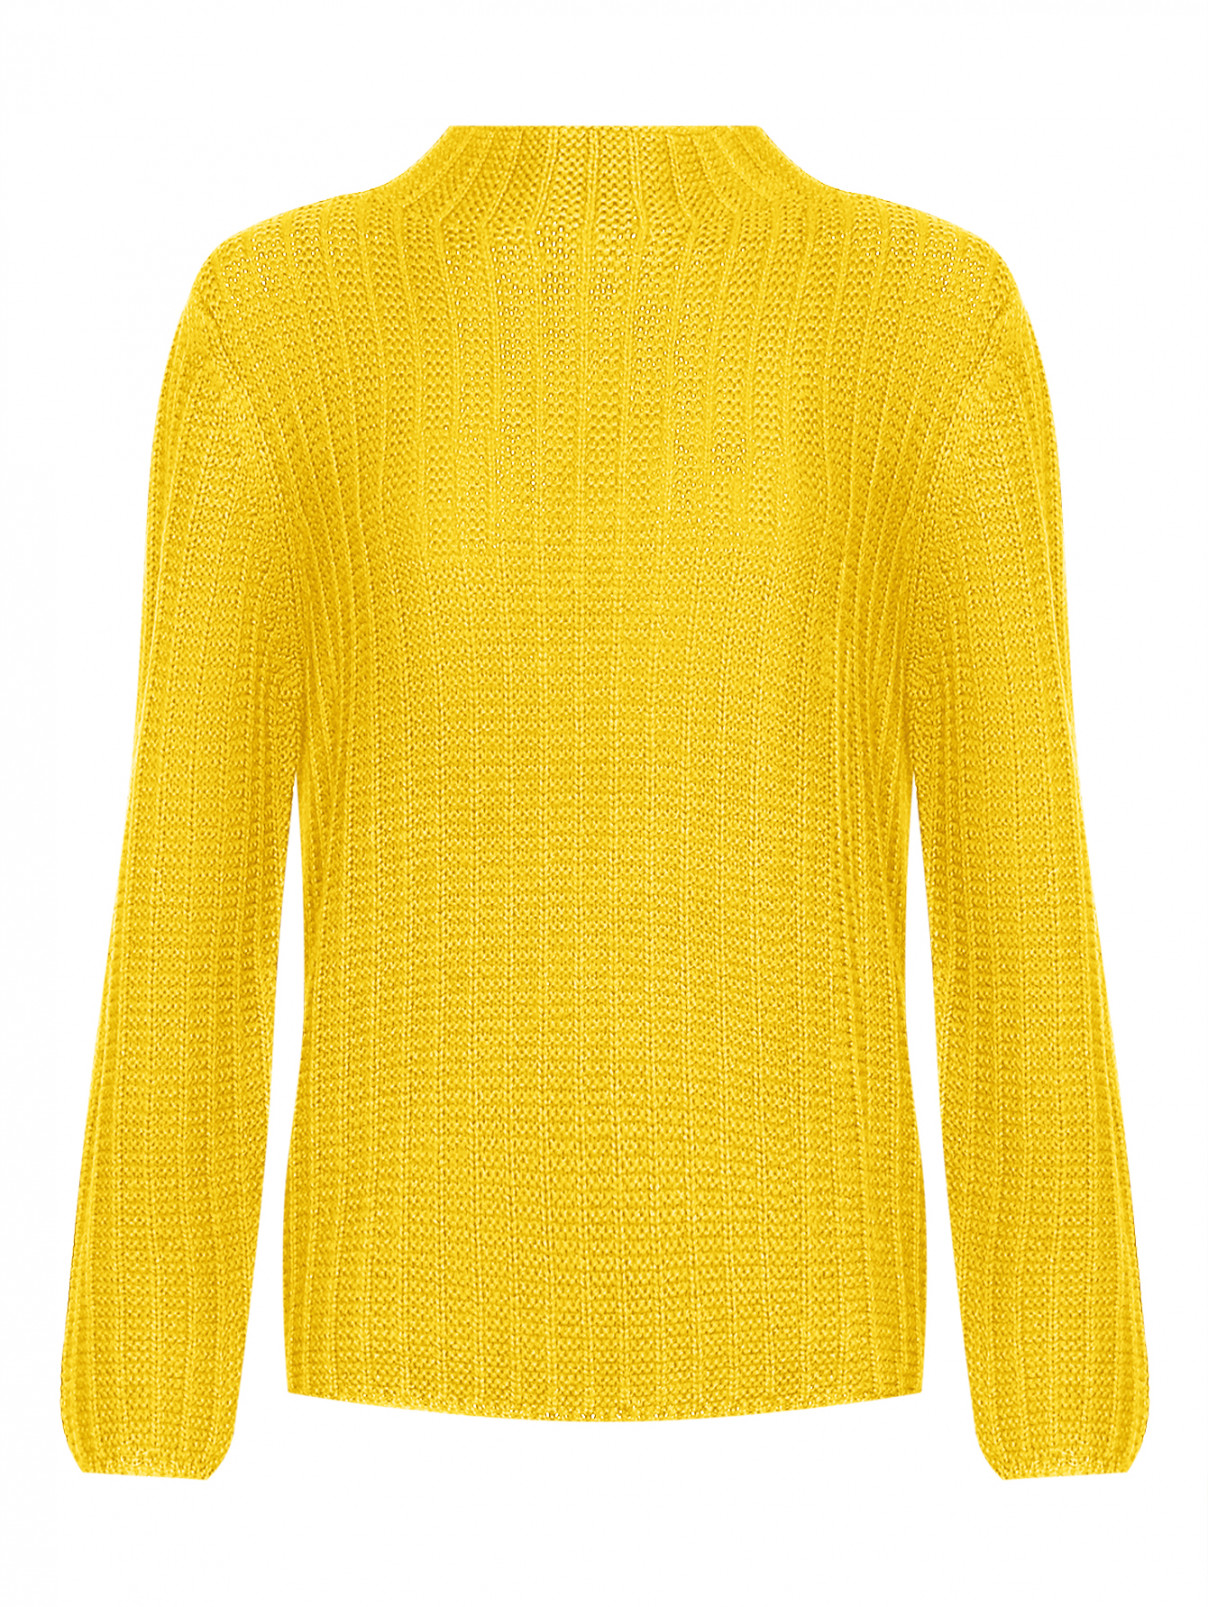 Базовый свитер из шерсти мелкой вязки Luisa Spagnoli  –  Общий вид  – Цвет:  Желтый